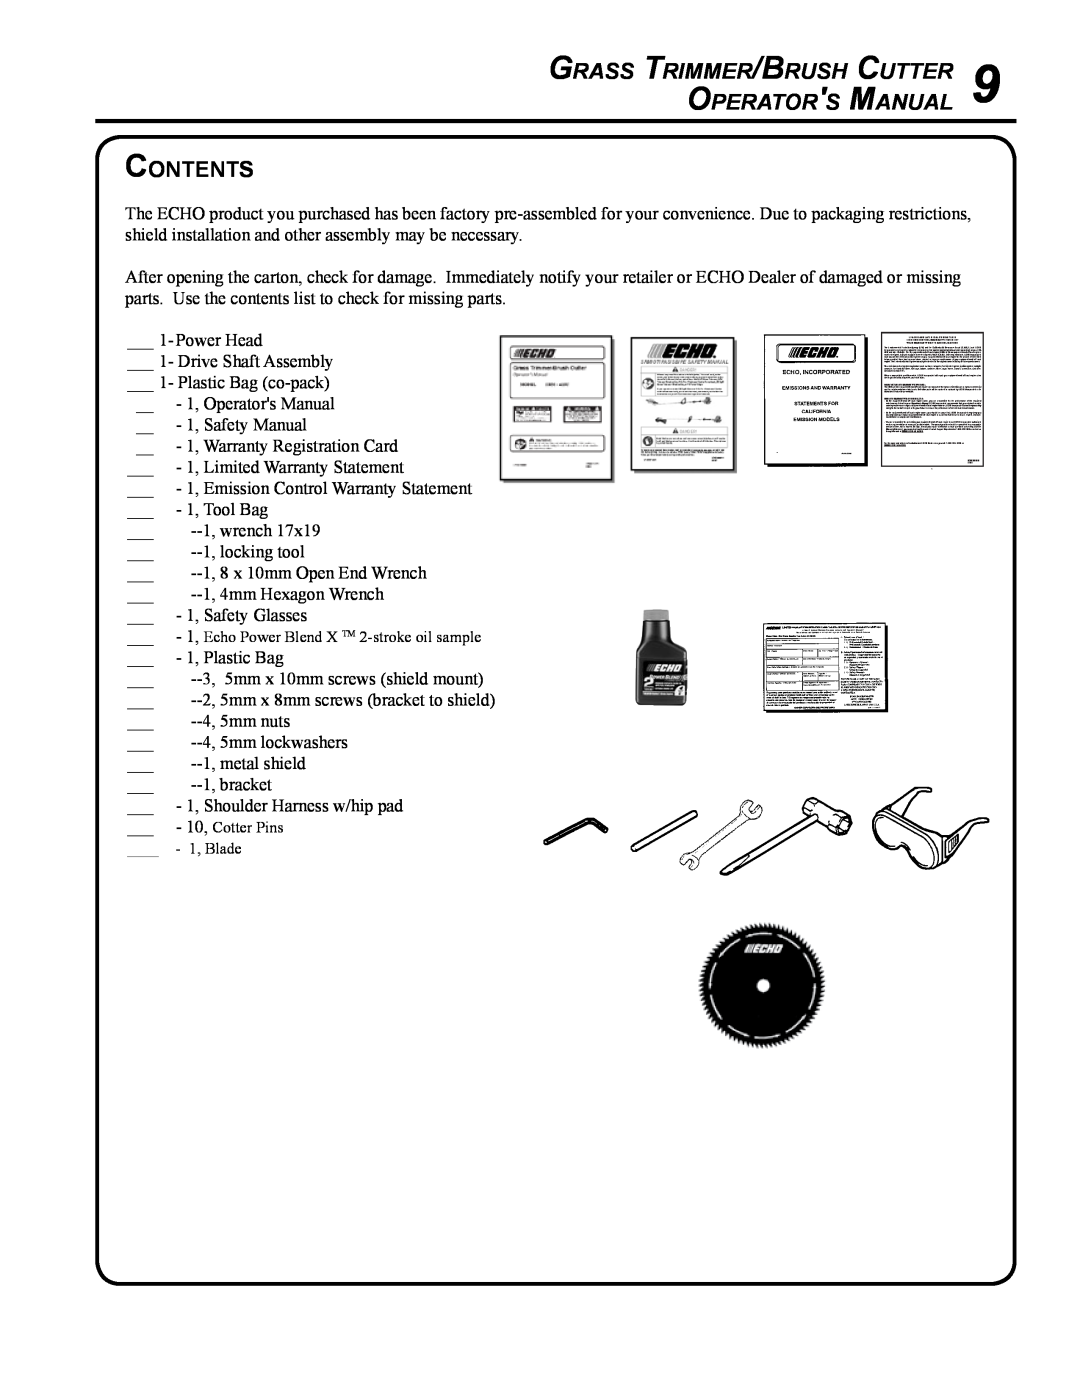 Echo SRM - 410U manual Contents, Grass Trimmer/Brush Cutter Operators Manual 